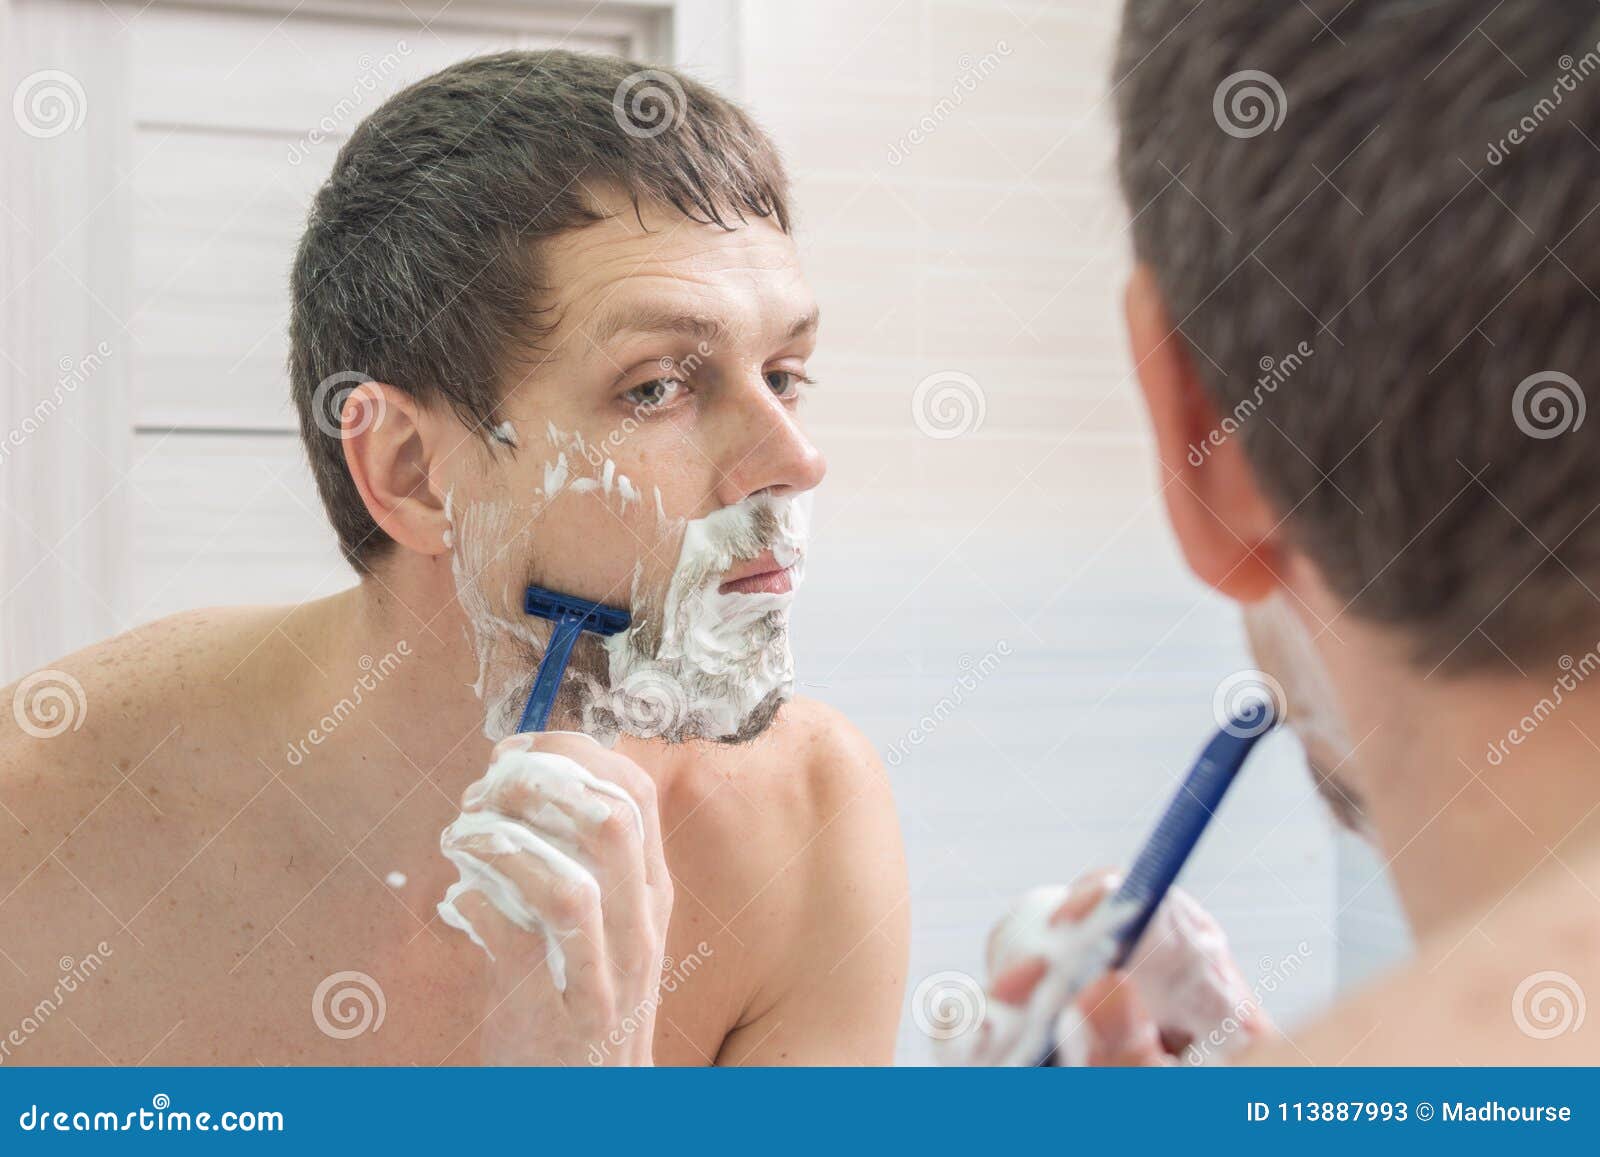 Брею перед походом. Мужчина бреется. Идеальное бритье для мужчин. Перед бритьем. Мужчина бреется Сток.